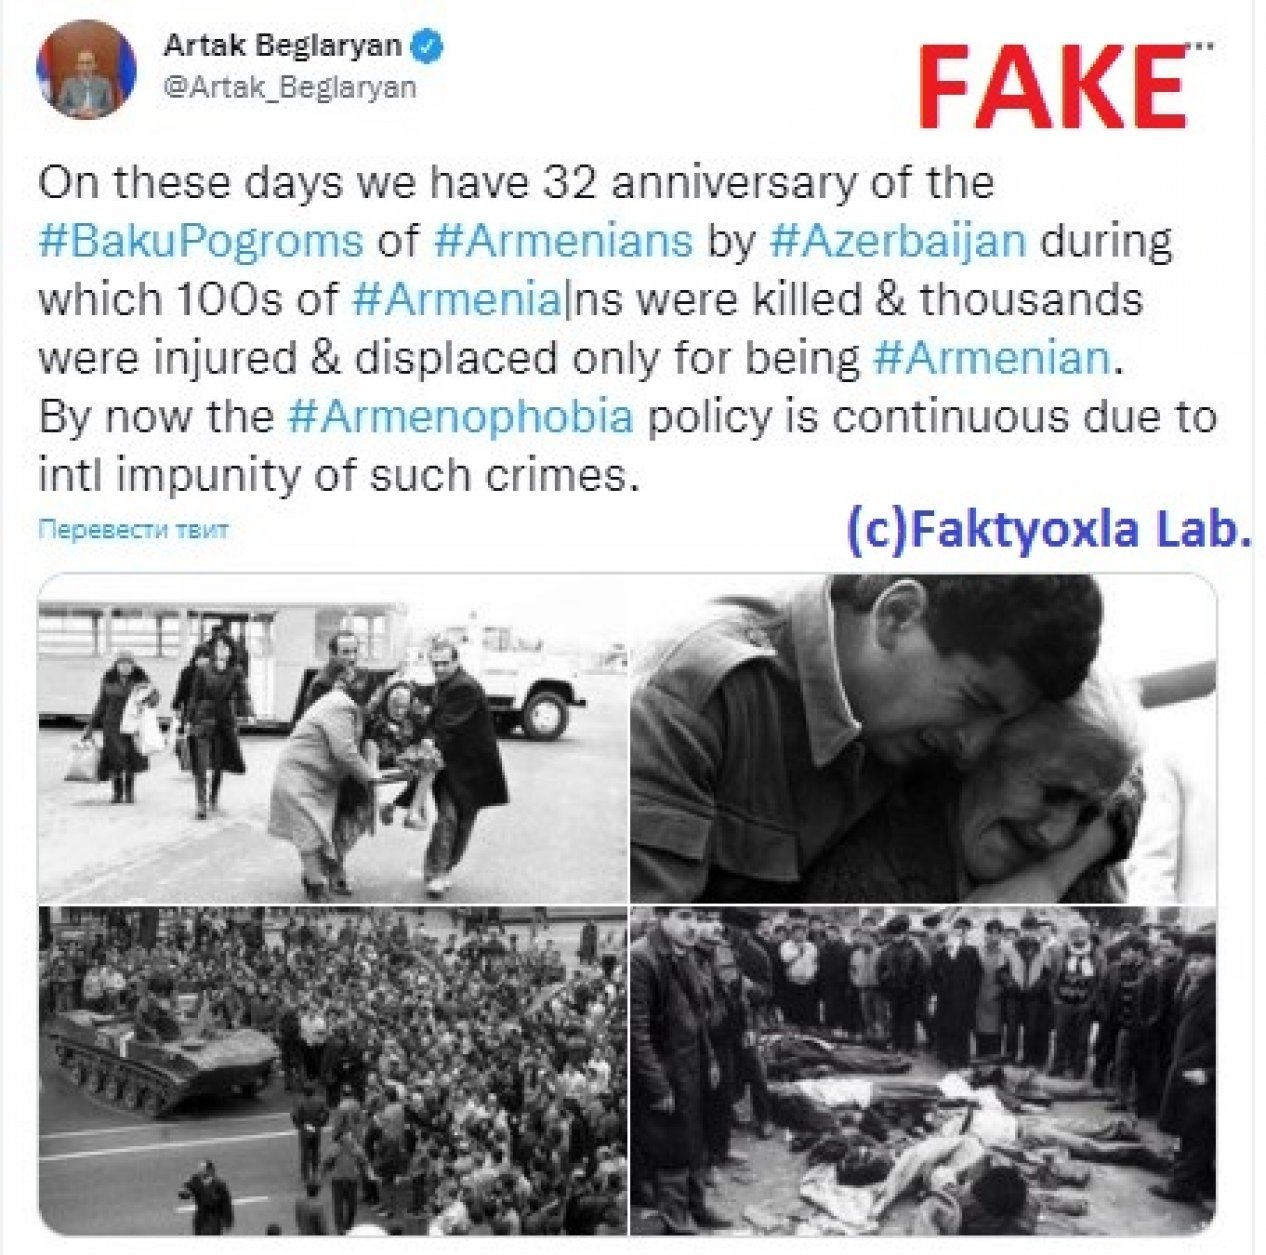 Artak Beglaryan’s misinterpretation of “Baku pogroms” and fake photos